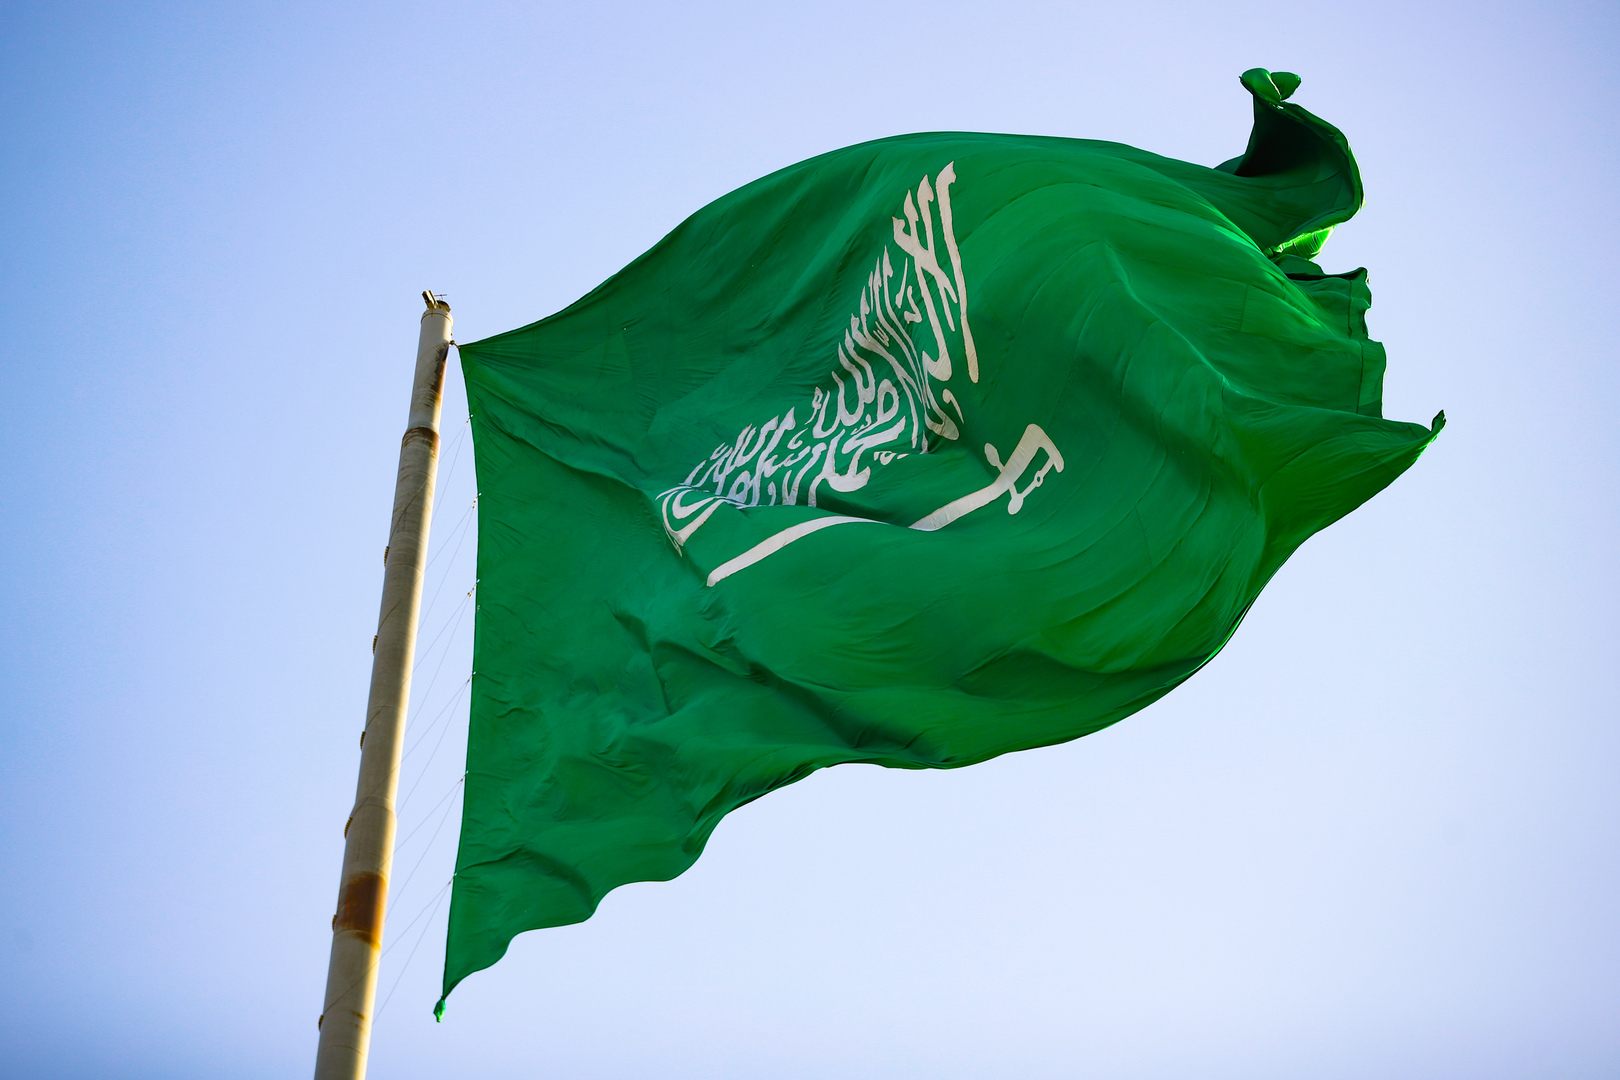 انخفاض معدل البطالة بين السعوديين إلى 10.1% في الربع الأول 2022